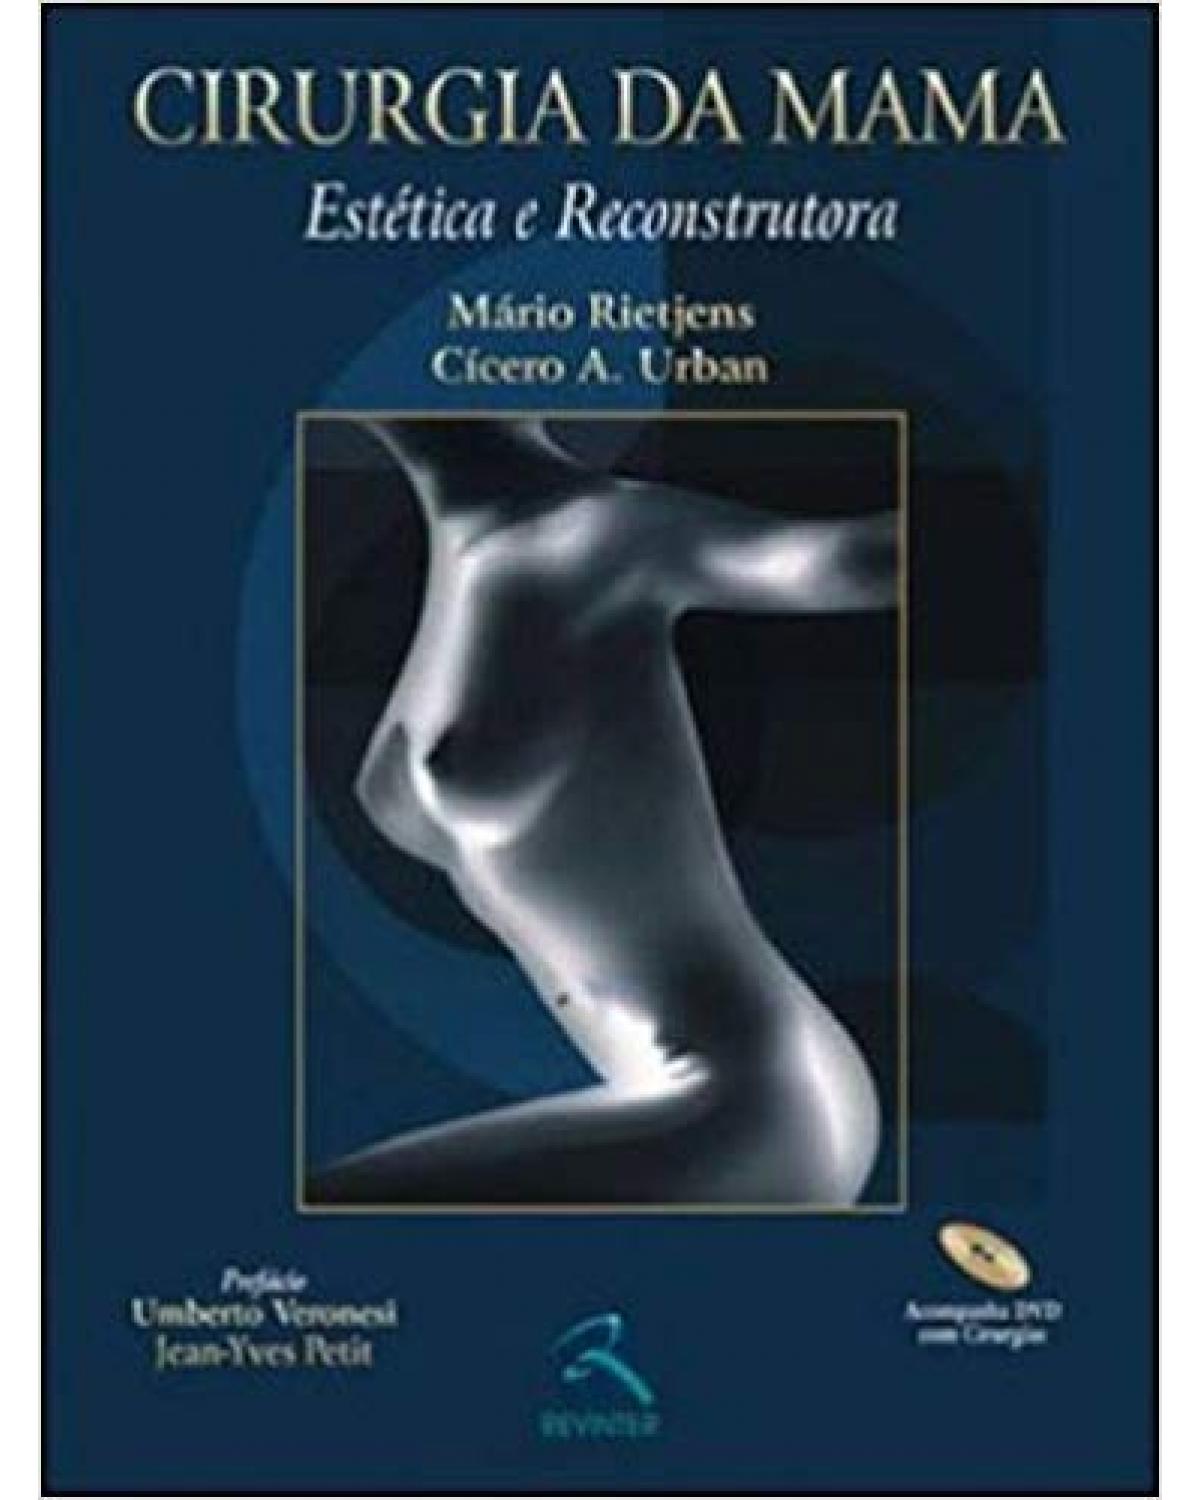 Cirurgia da mama - estética e reconstrutora - 1ª Edição | 2007